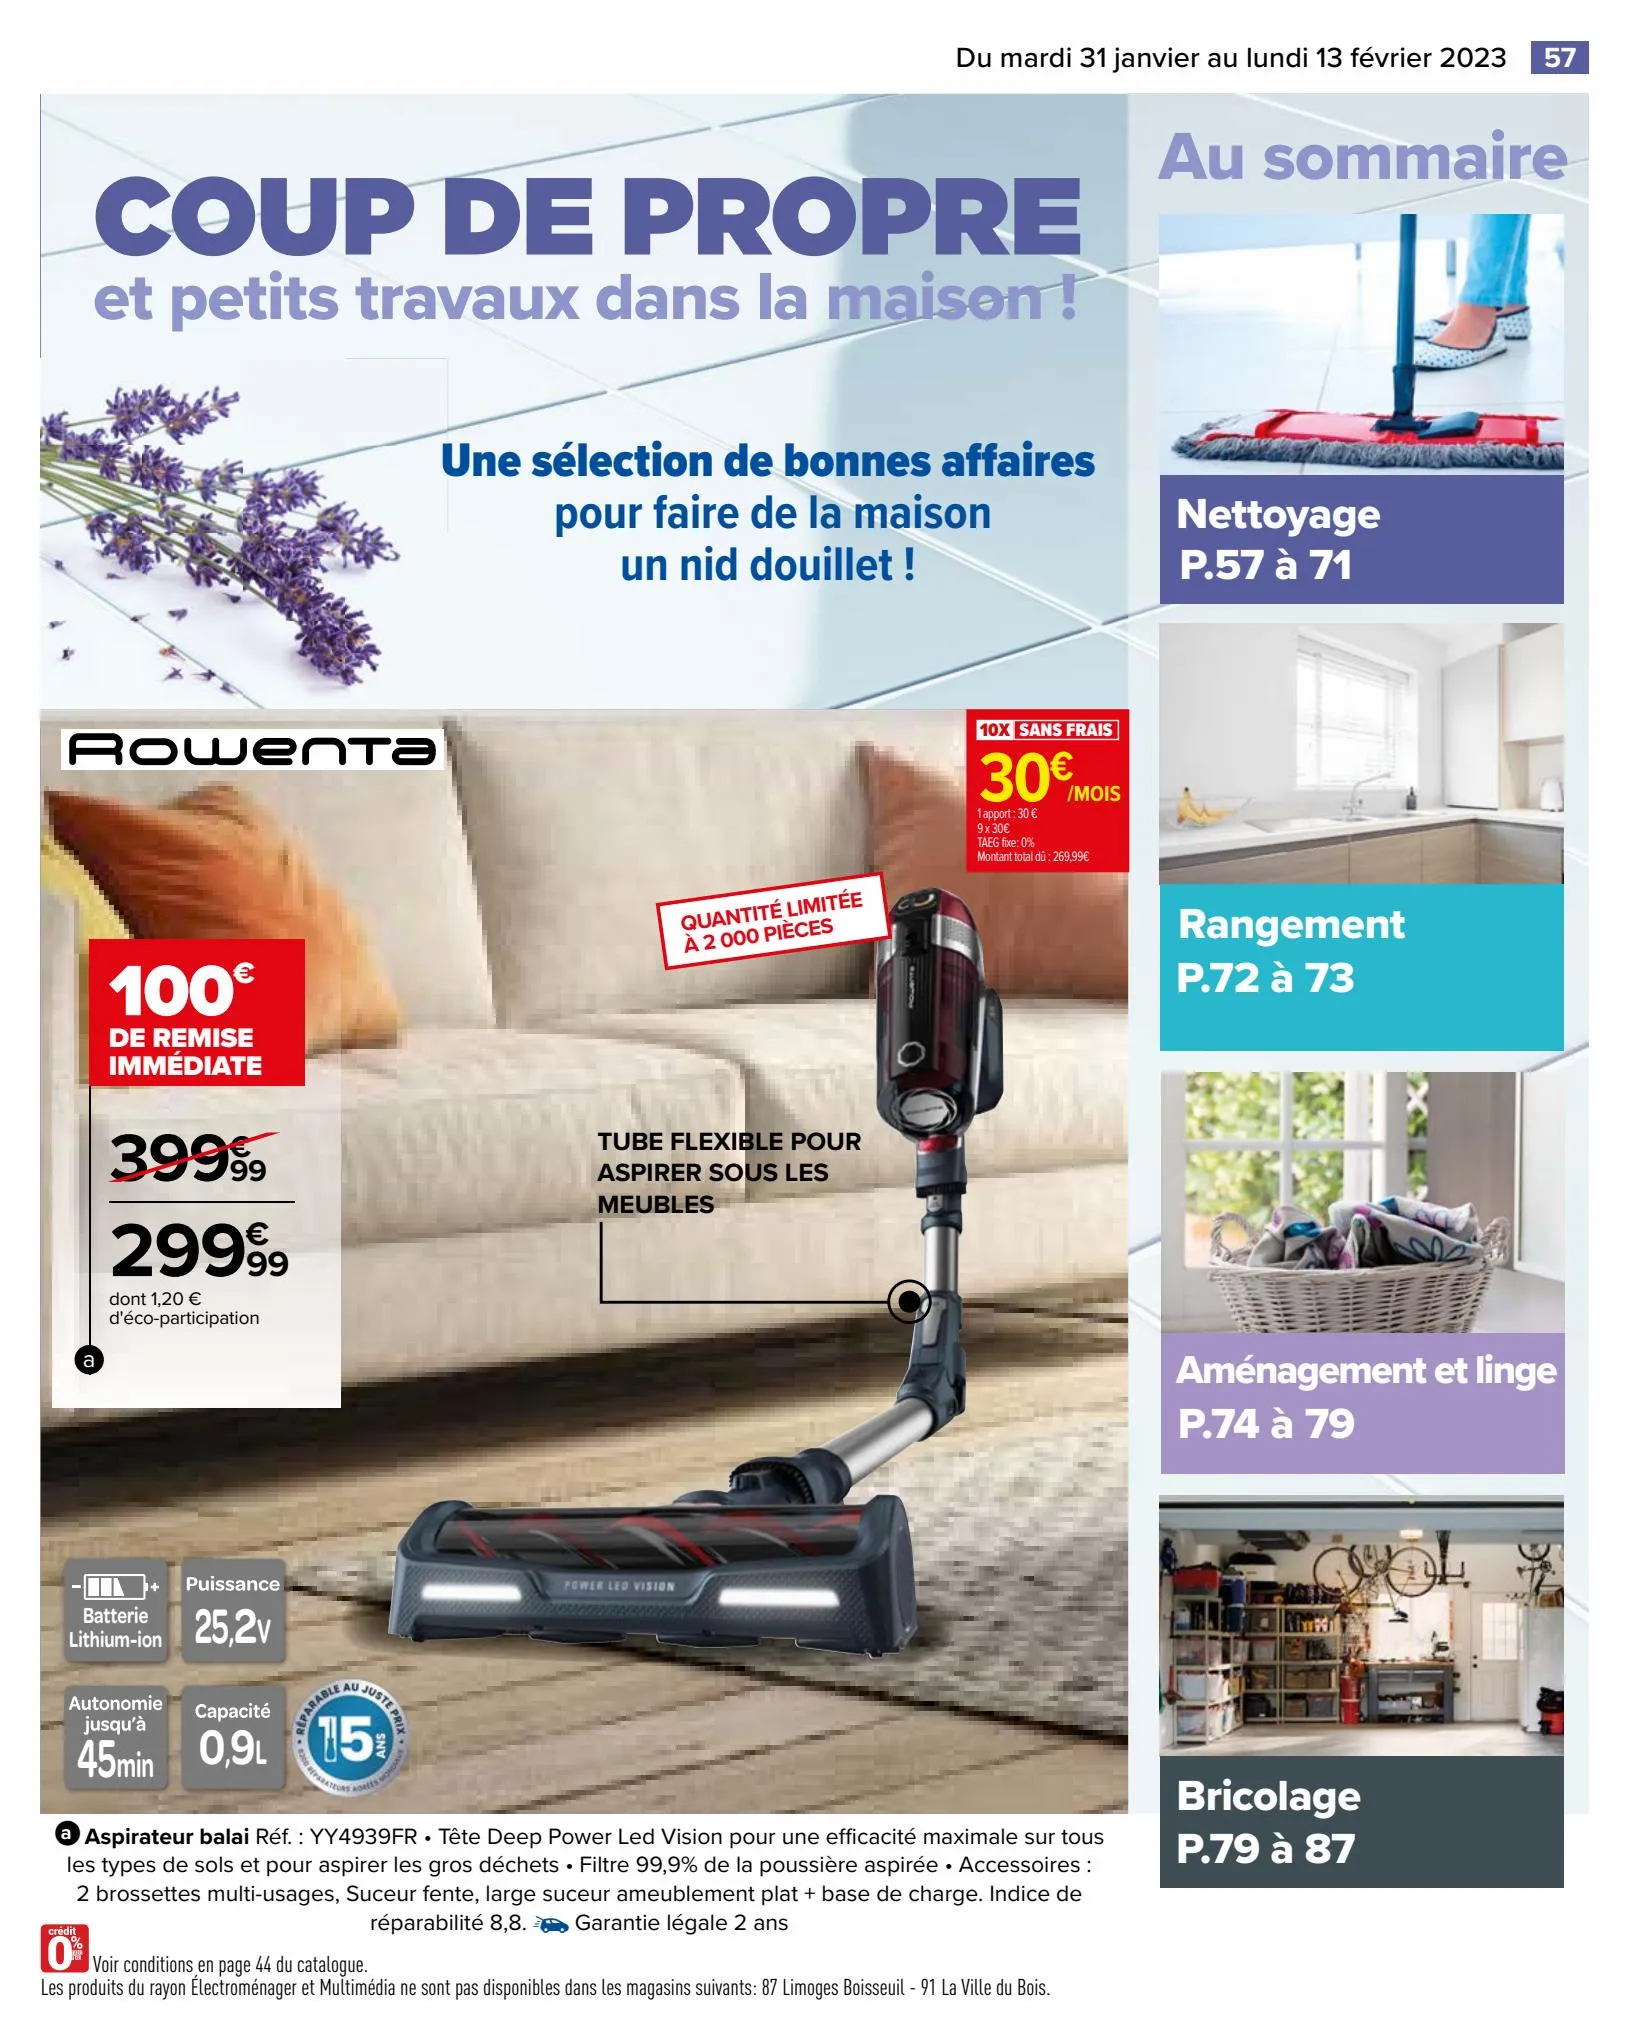 Catalogue Coup de propre dans la maison, page 00057